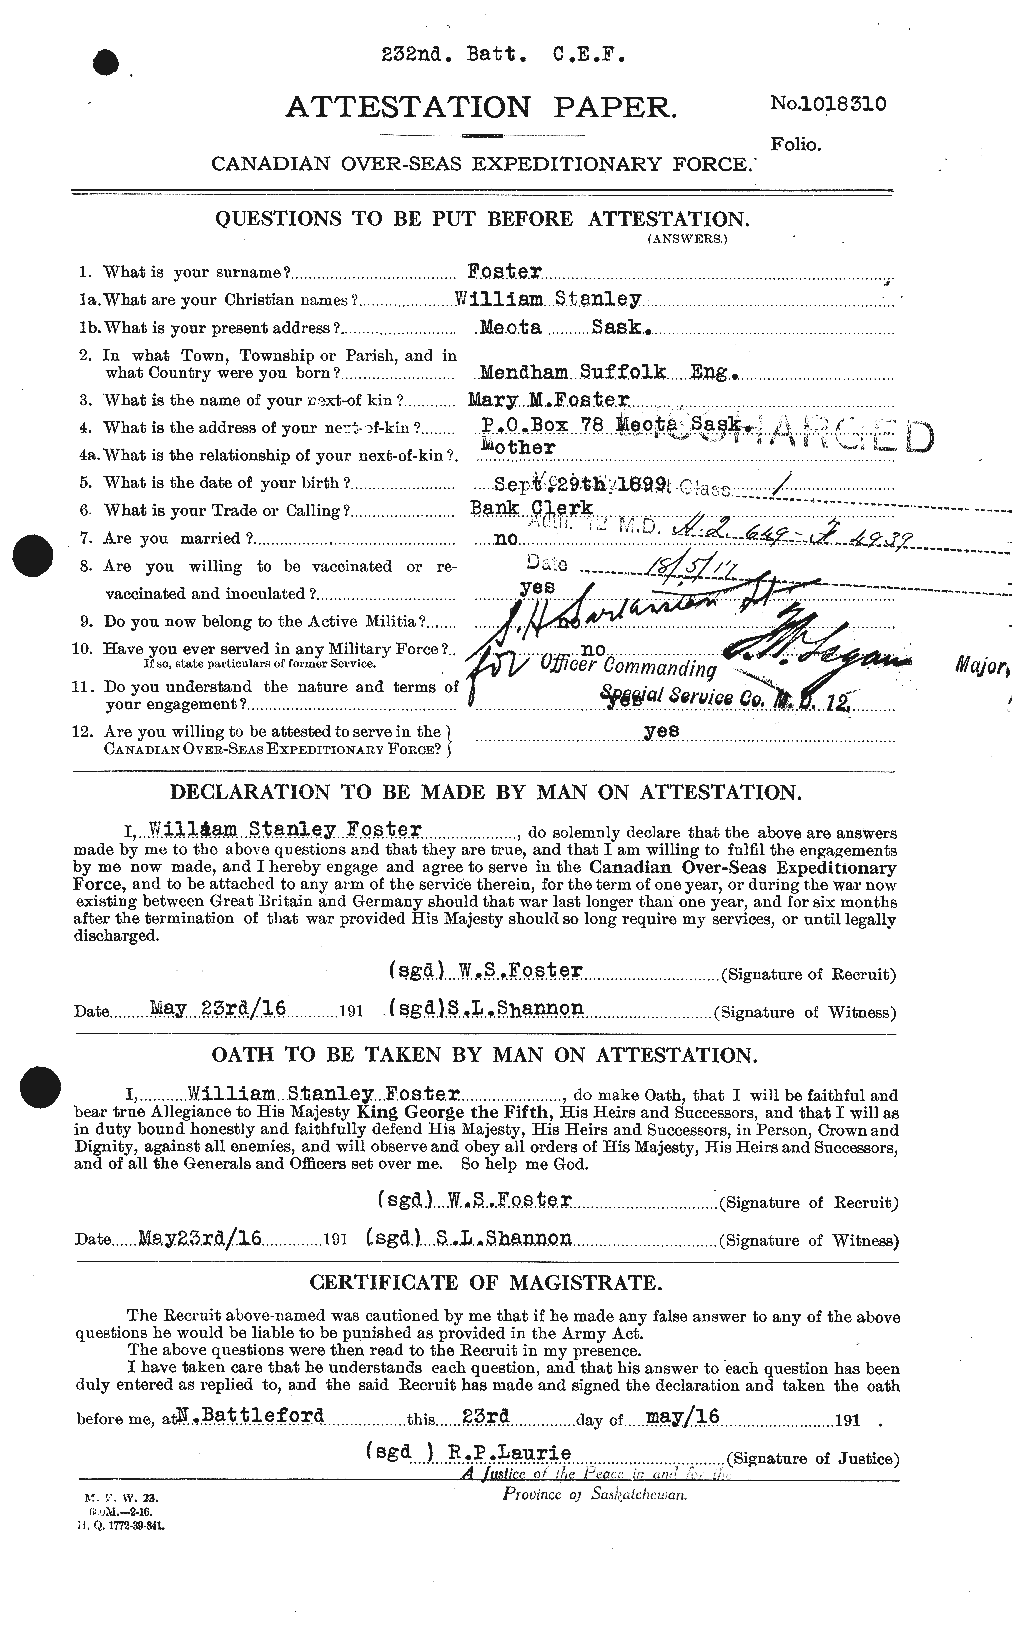 Dossiers du Personnel de la Première Guerre mondiale - CEC 328773a